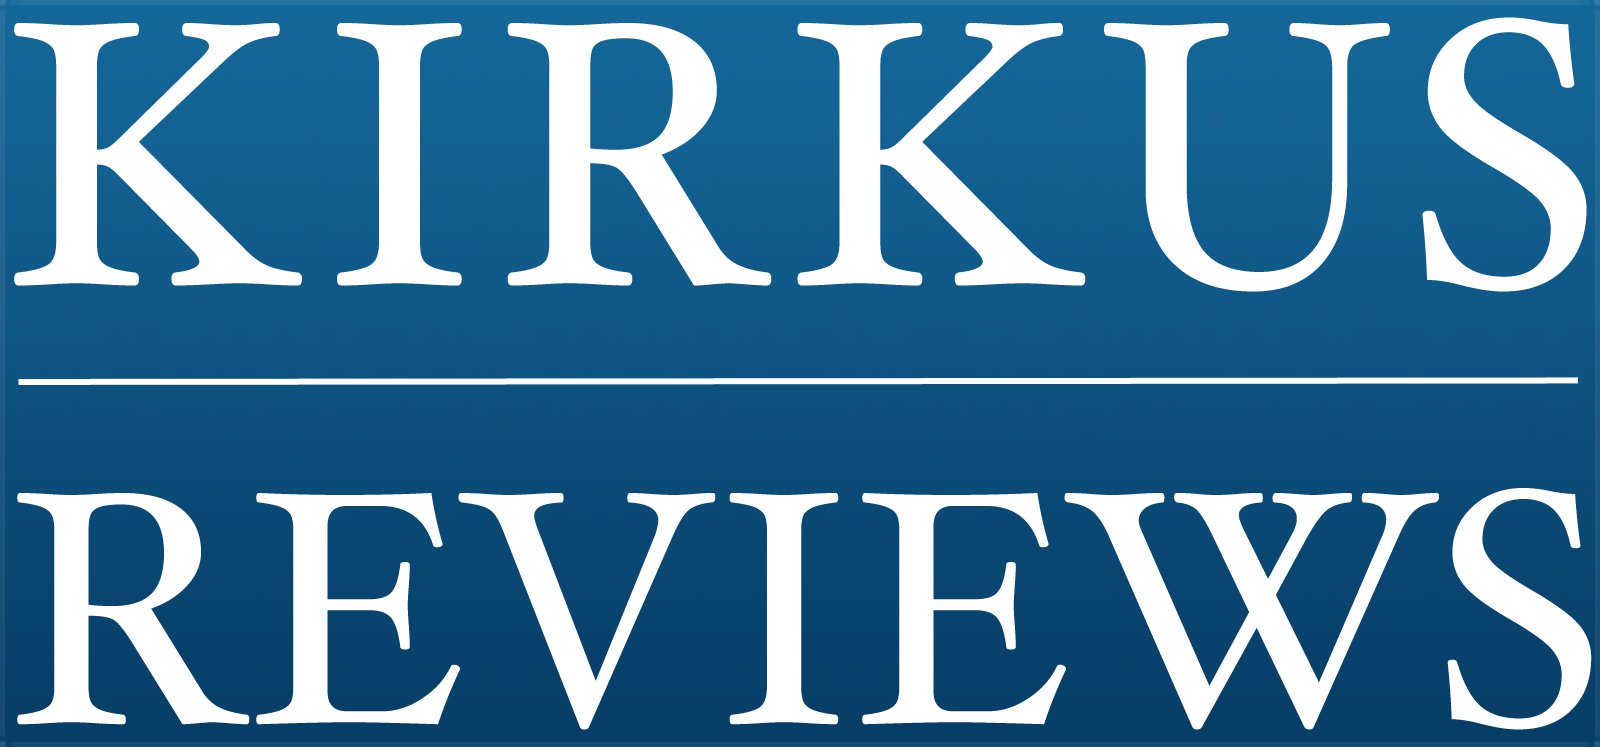 Kirkus Reviews Logo